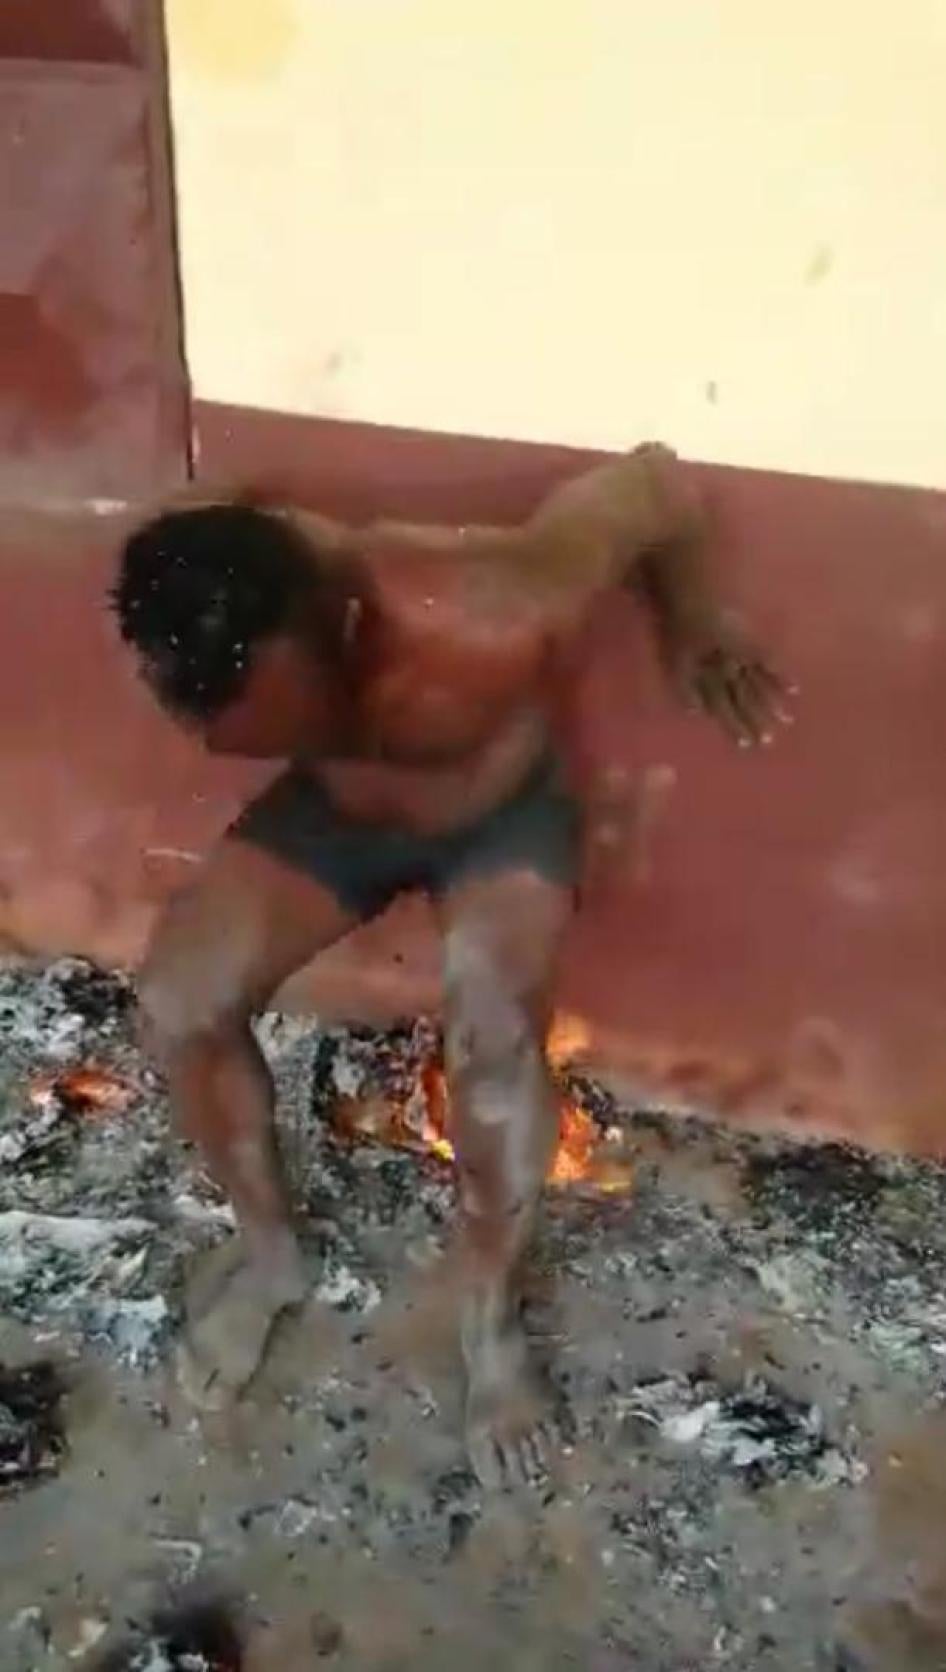 Capture d’écran d'une vidéo montrant un homme forcée à s’asseoir sur des morceaux de papier enflammés, ans une école abandonnée à Bali dans la région du Nord-Ouest du Cameroun. Il aurait été torturé par des séparatistes armés dans cette région anglophone,